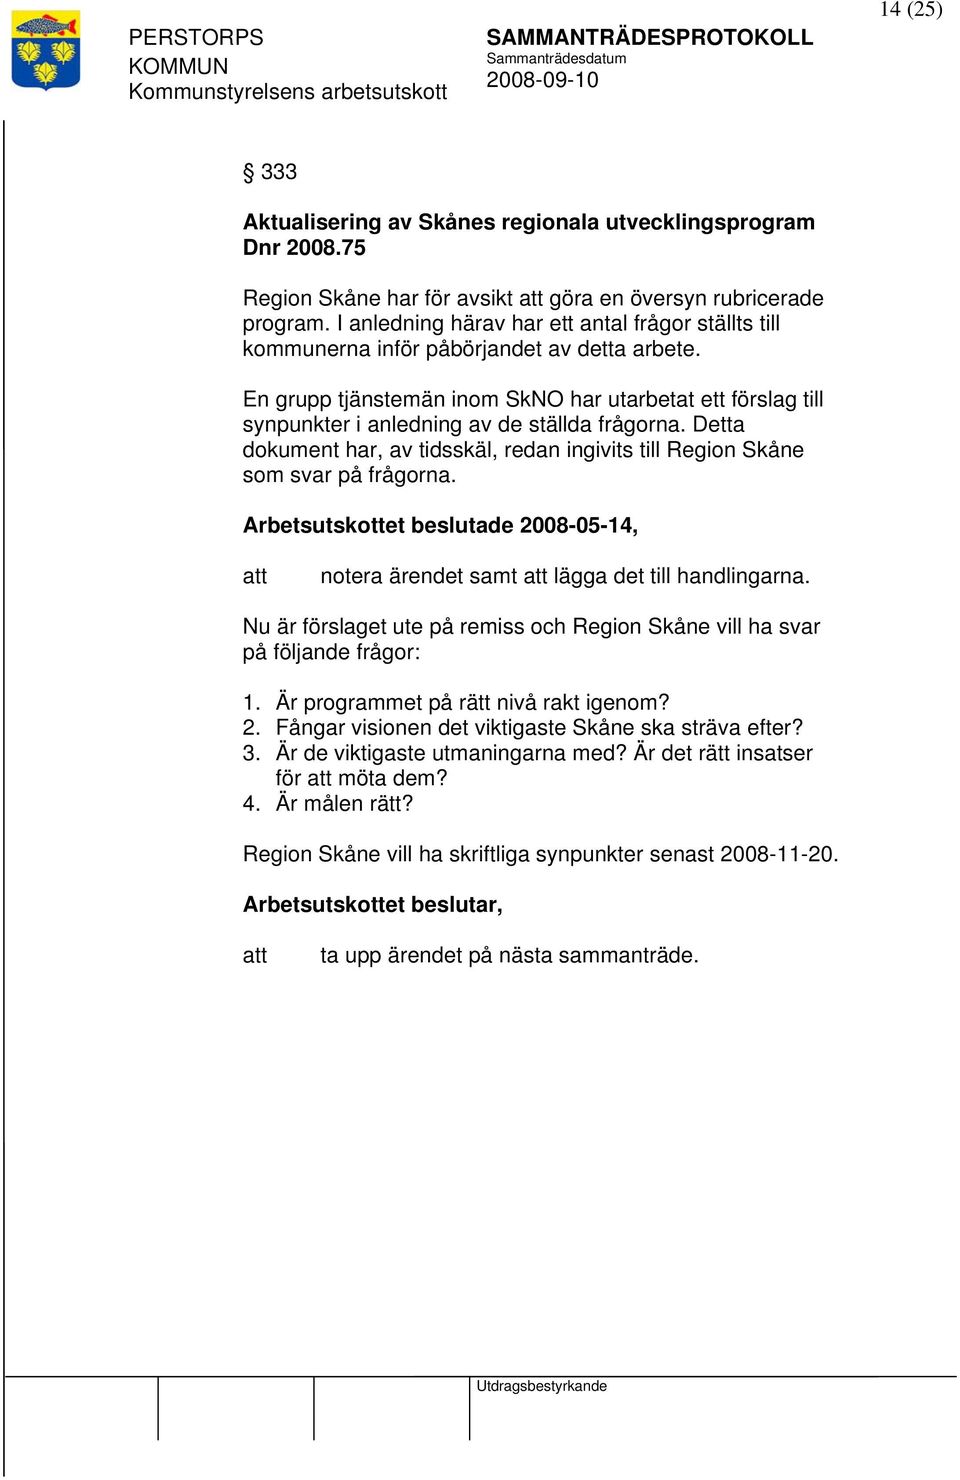 En grupp tjänstemän inom SkNO har utarbetat ett förslag till synpunkter i anledning av de ställda frågorna. Detta dokument har, av tidsskäl, redan ingivits till Region Skåne som svar på frågorna.